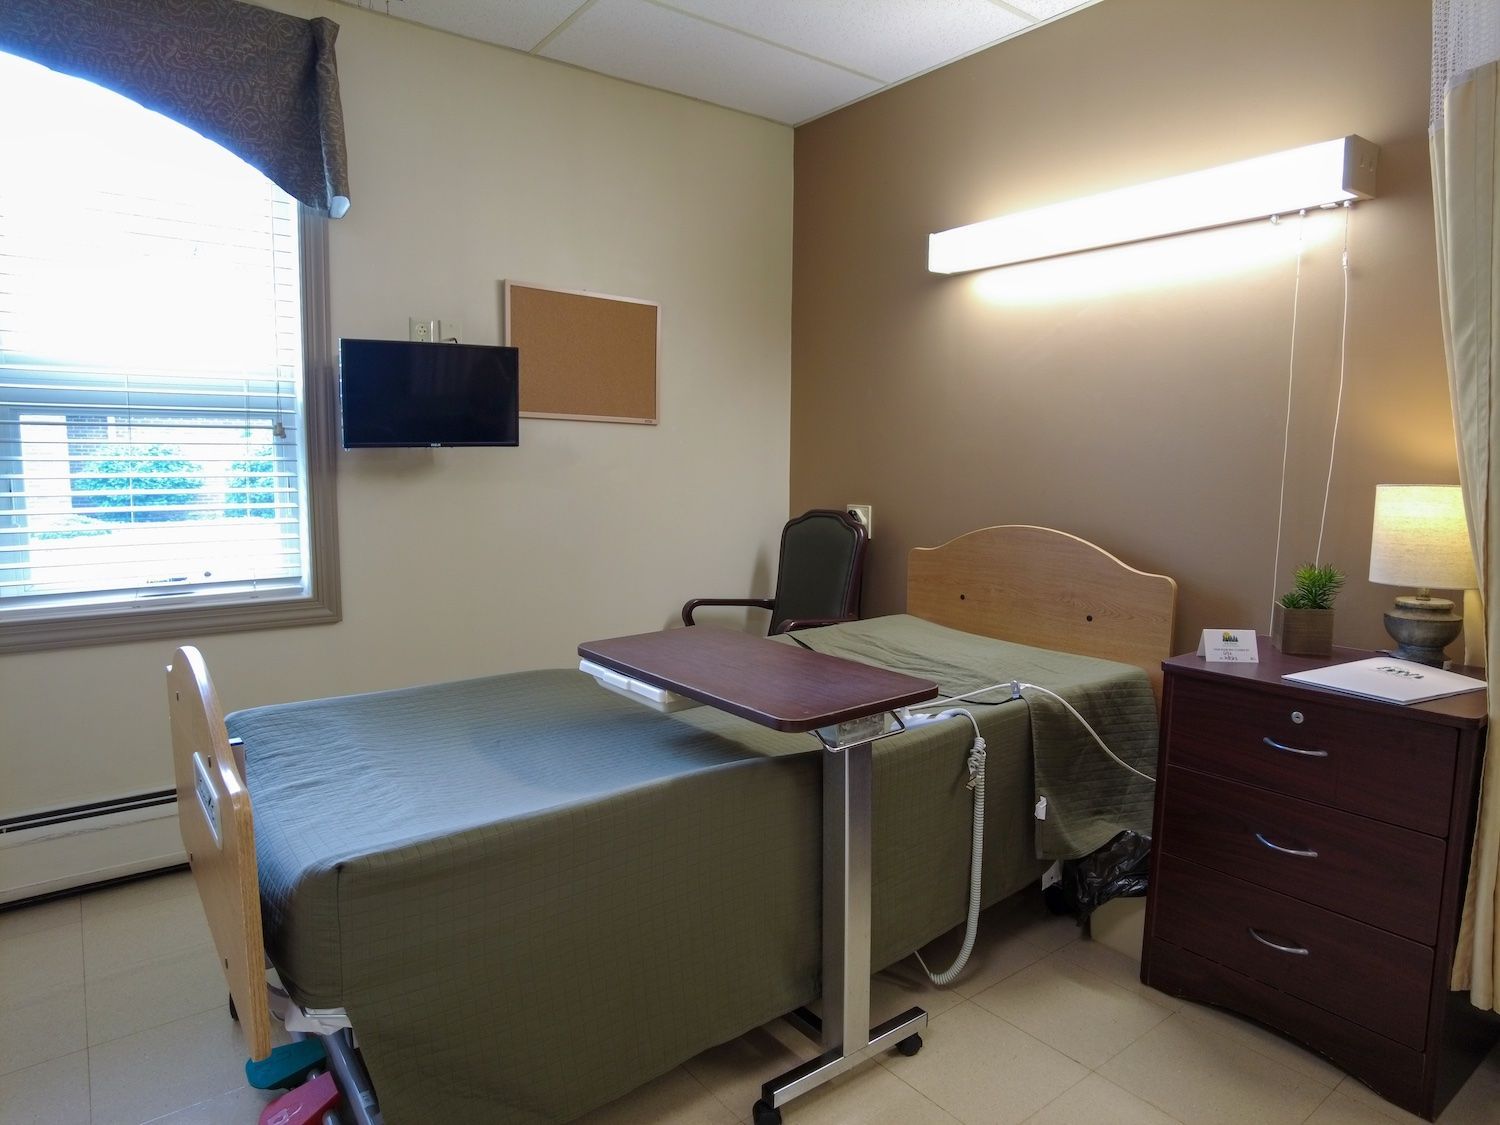 Elk Haven patient room interior